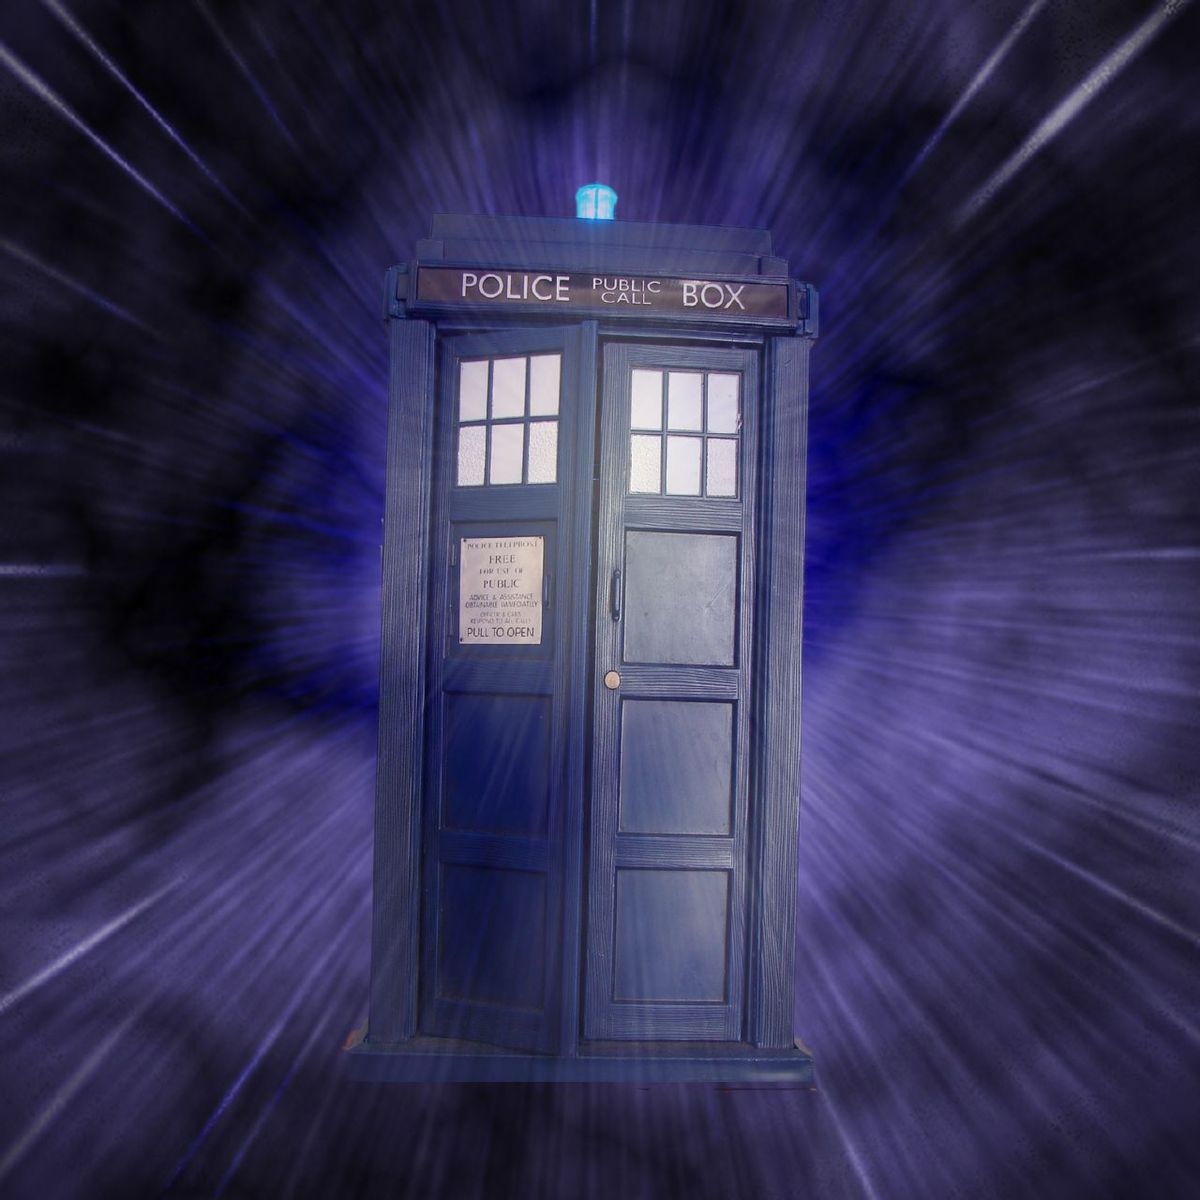 Doctor Who : deux Docteurs feront équipe dans une aventure inédite